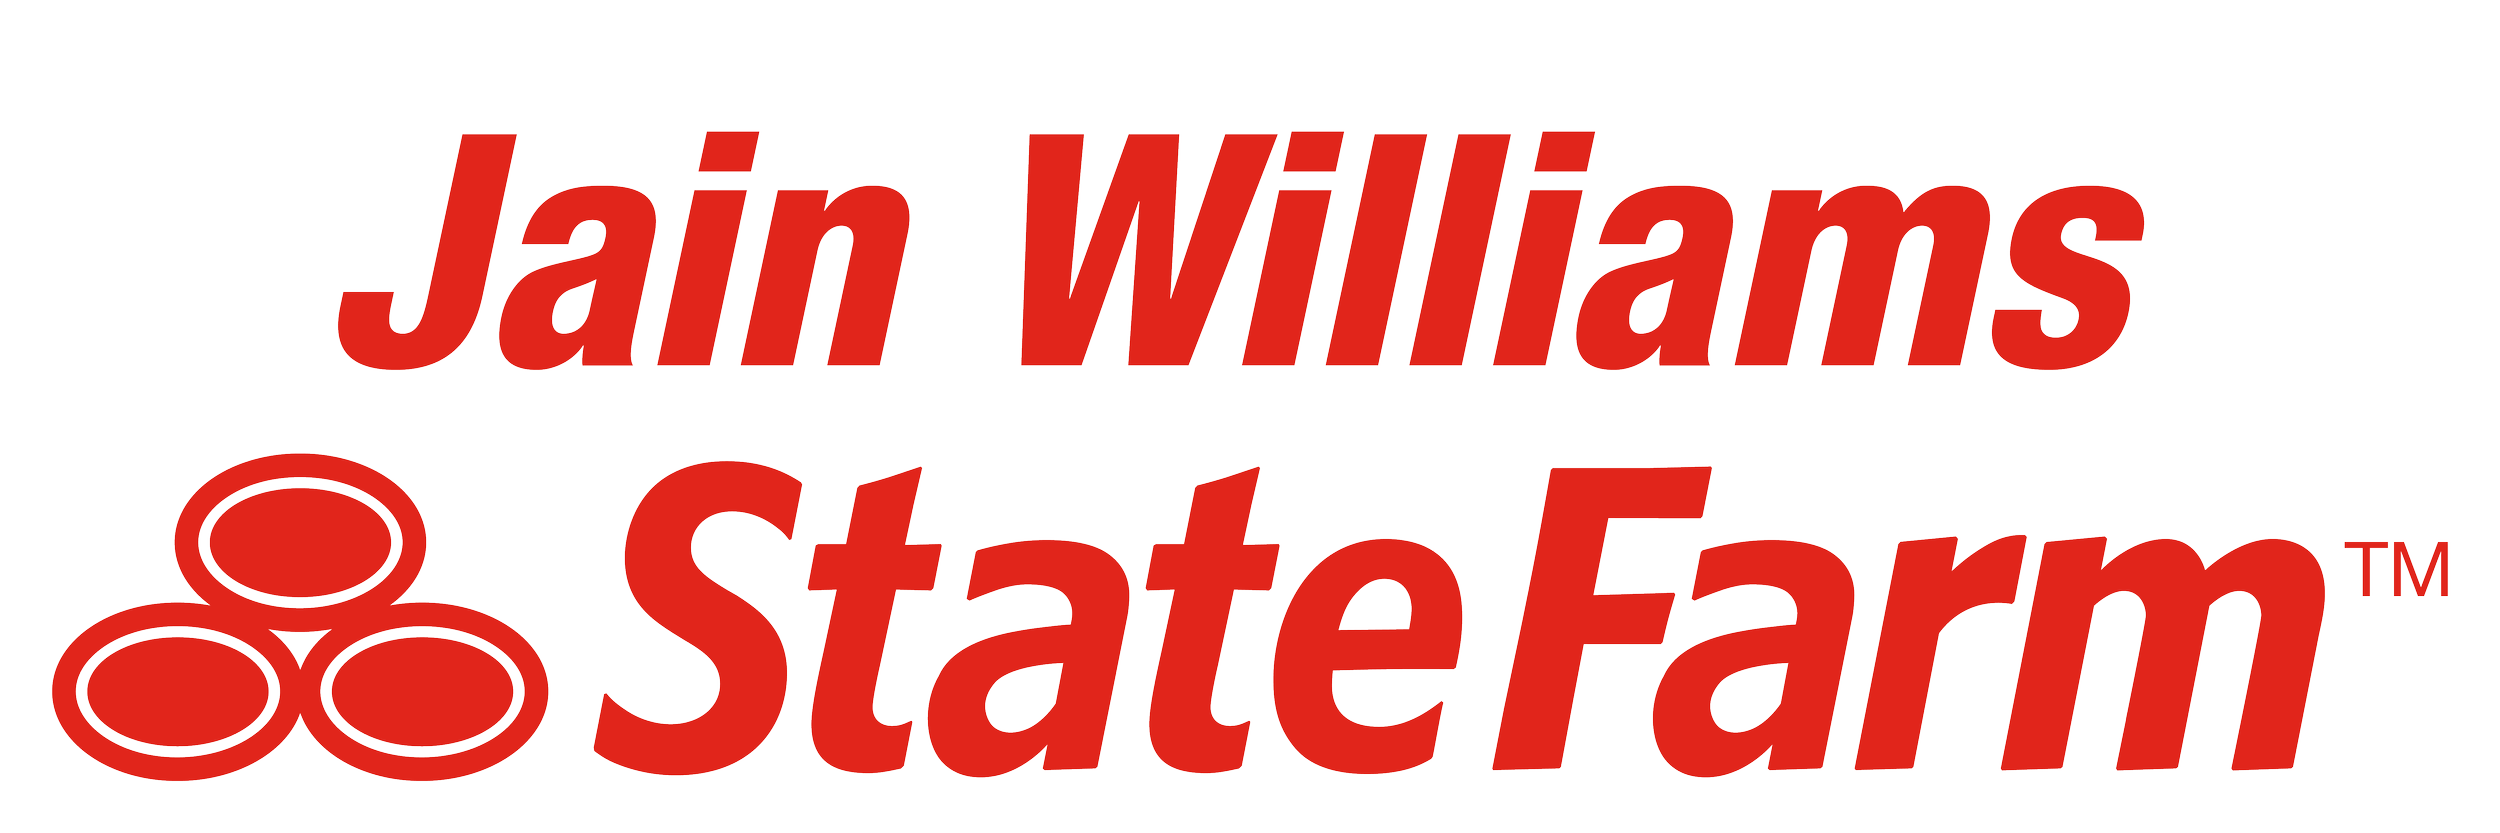 Jain Williams SF logo.png